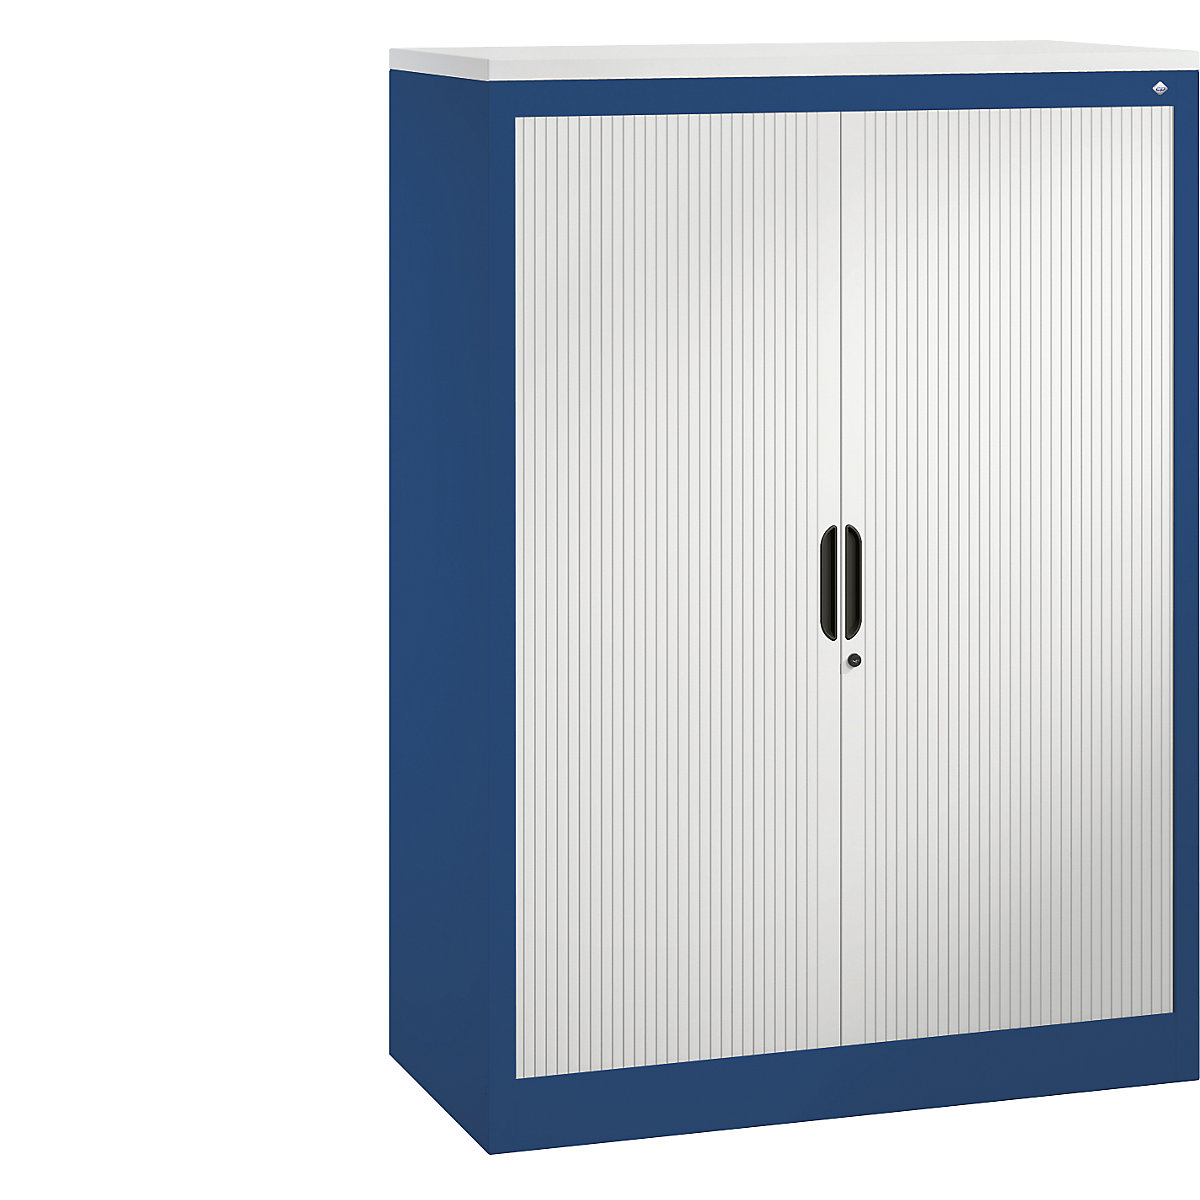 Roller shutter cupboard with horizontal shutter – C+P, HxWxD 1345 x 1000 x 420 mm, 3 shelves, 3.5 file heights, gentian blue / light grey-3